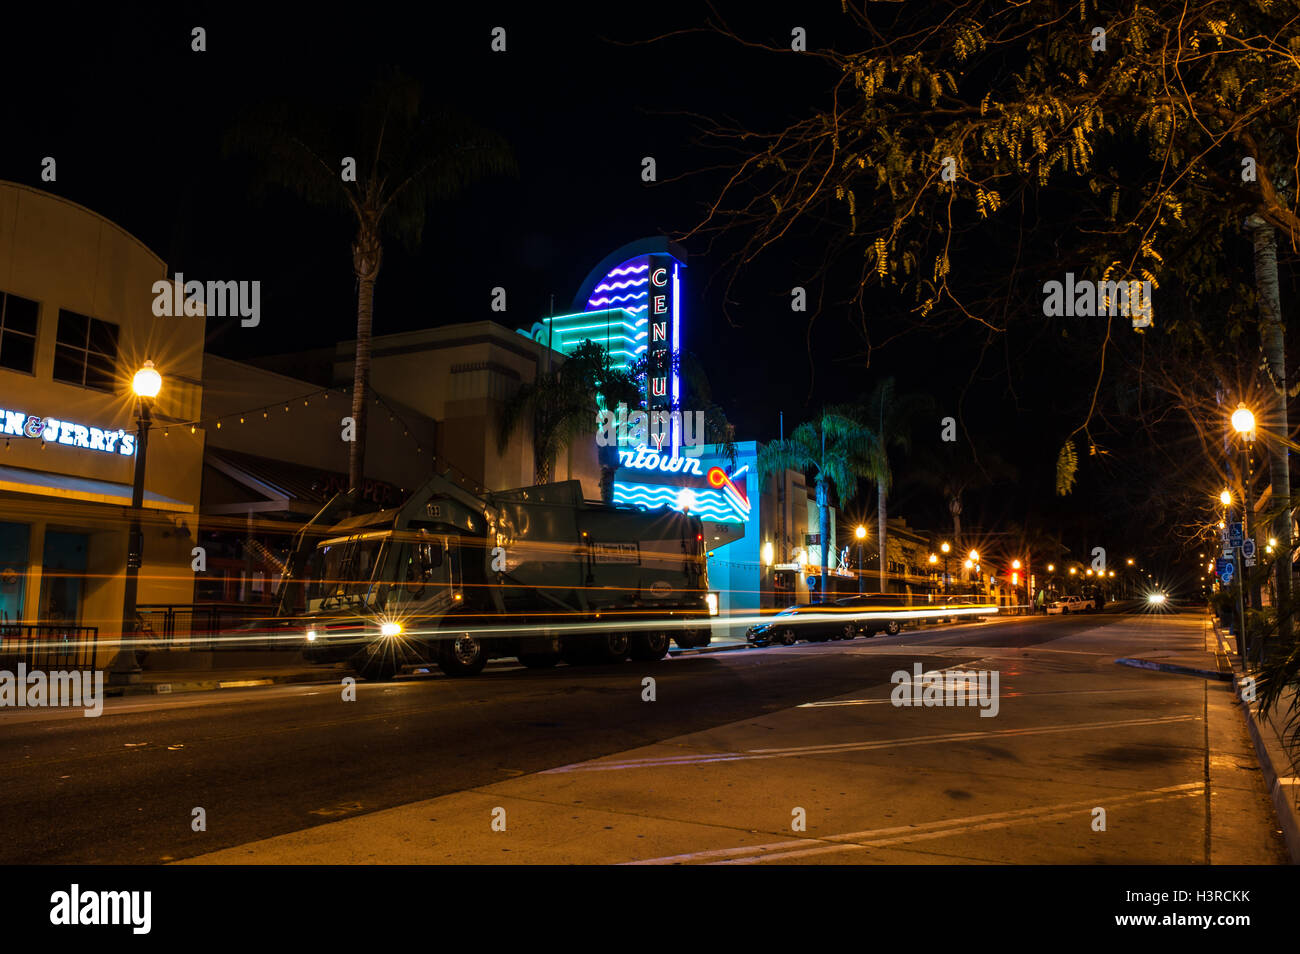 Scheinwerfer, die bewegte Vergangenheit Ventura-Kino in der Nacht Streifen. Stockfoto